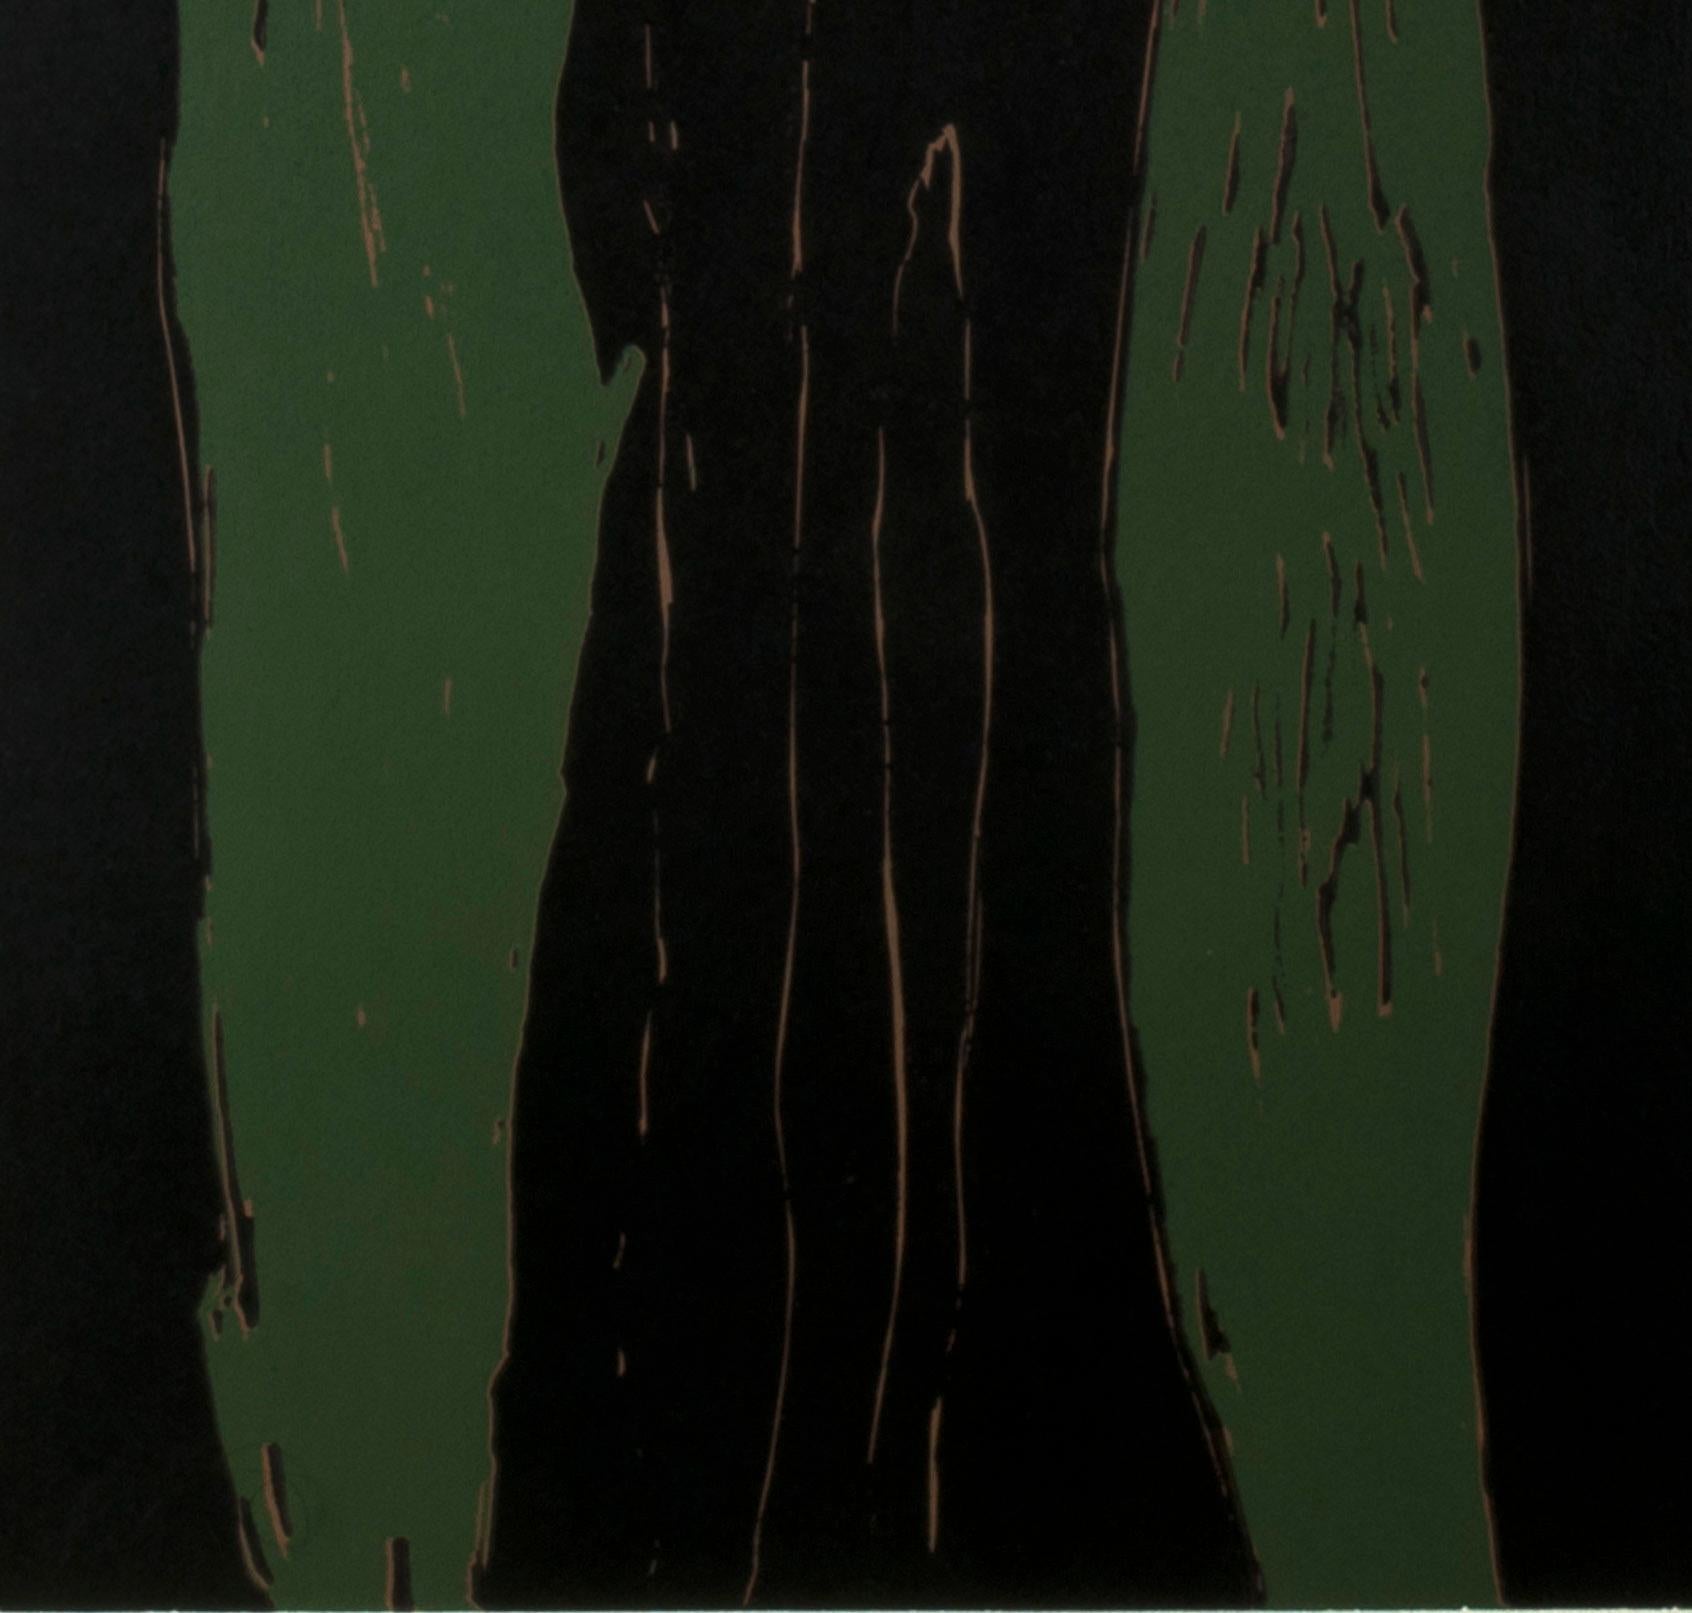 Cyprès
Gravure sur bois réductrice en couleurs, noir, vert et brun, 1982
Non signé
D'après : Série d'images de clochards
